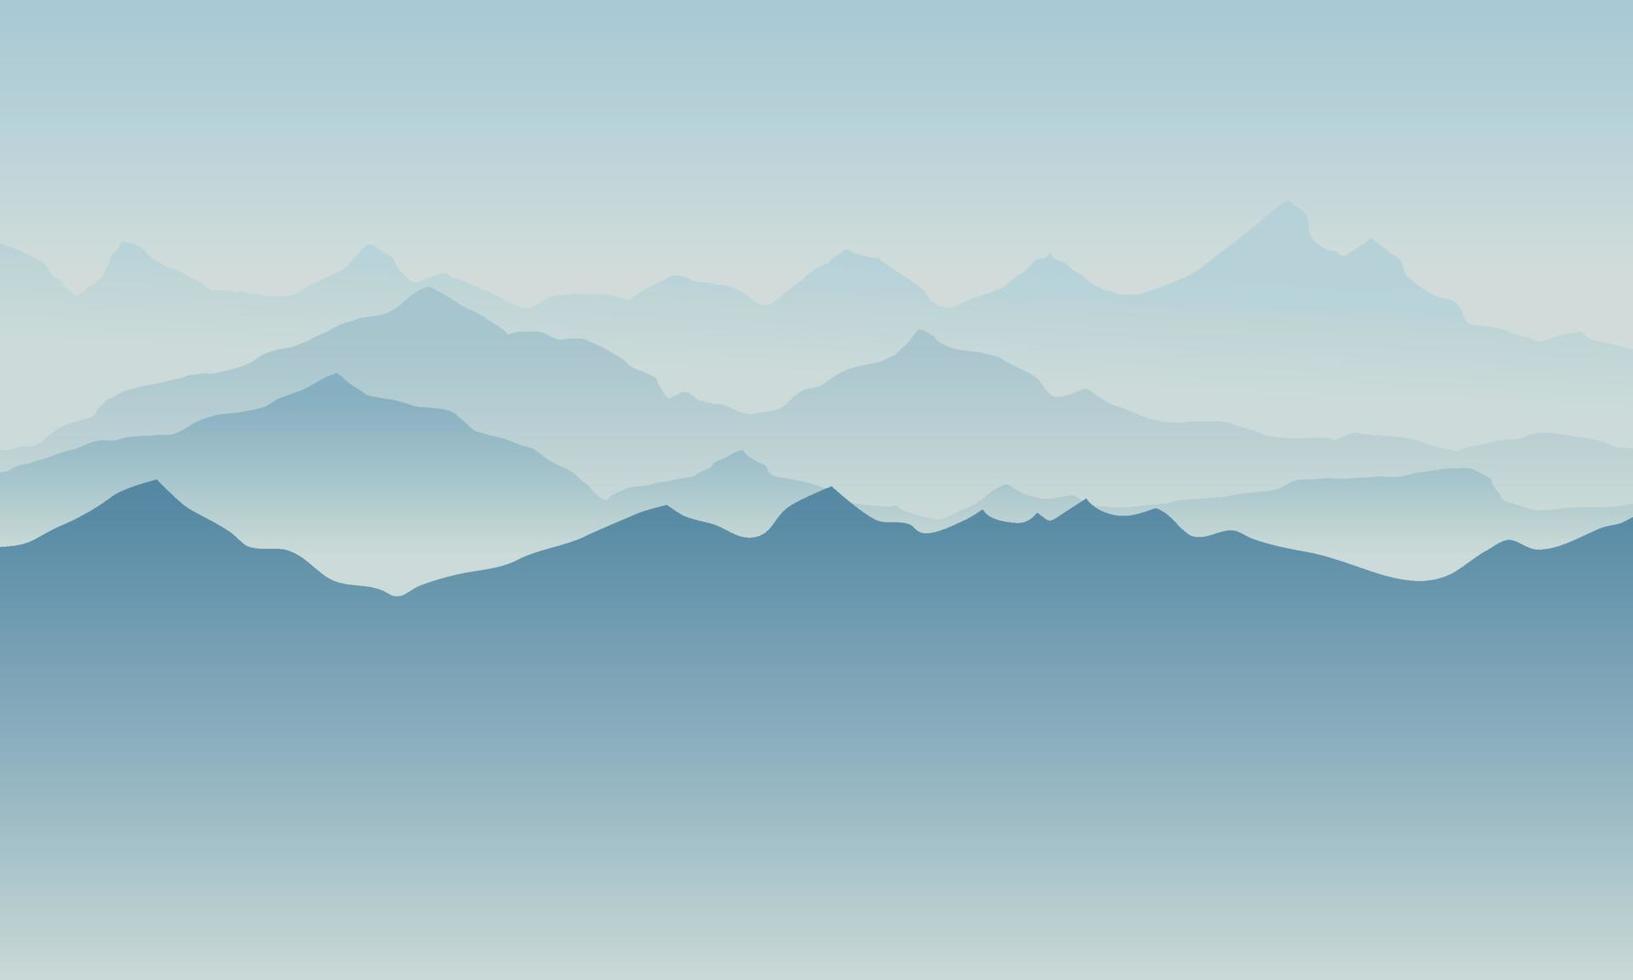 bellissimo paesaggio di silhouette di montagna blu con nebbia e alba e tramonto sullo sfondo delle montagne. concetto di outdoor ed escursionismo. vettore. buono per carta da parati, banner del sito, copertina, poster vettore